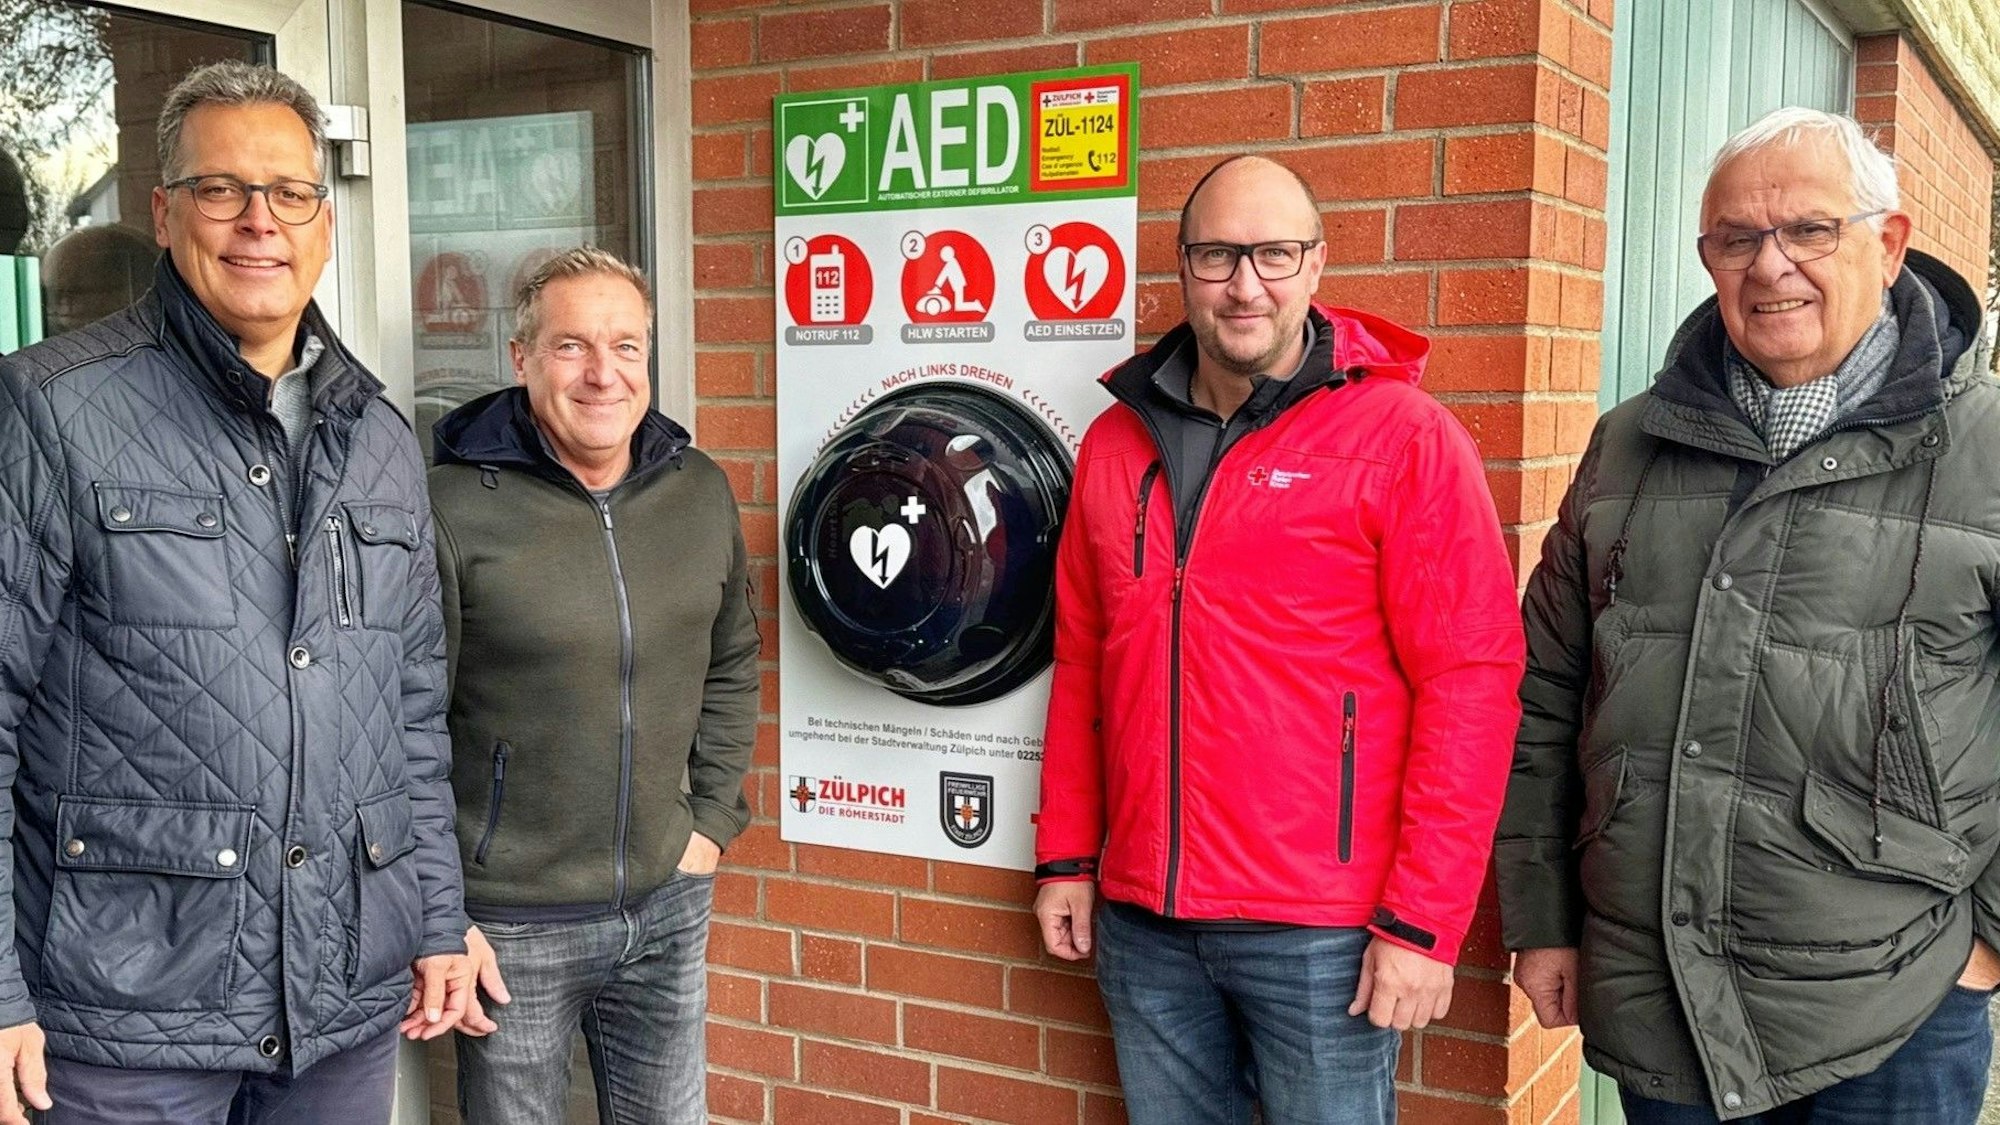 Bürgermeister Ulf Hürtgen steht links im Bild. Er präsentiert mit drei weiteren Männern den neuen Defibrillator an der Dieter-Pritzsche-Halle in Zülpich.